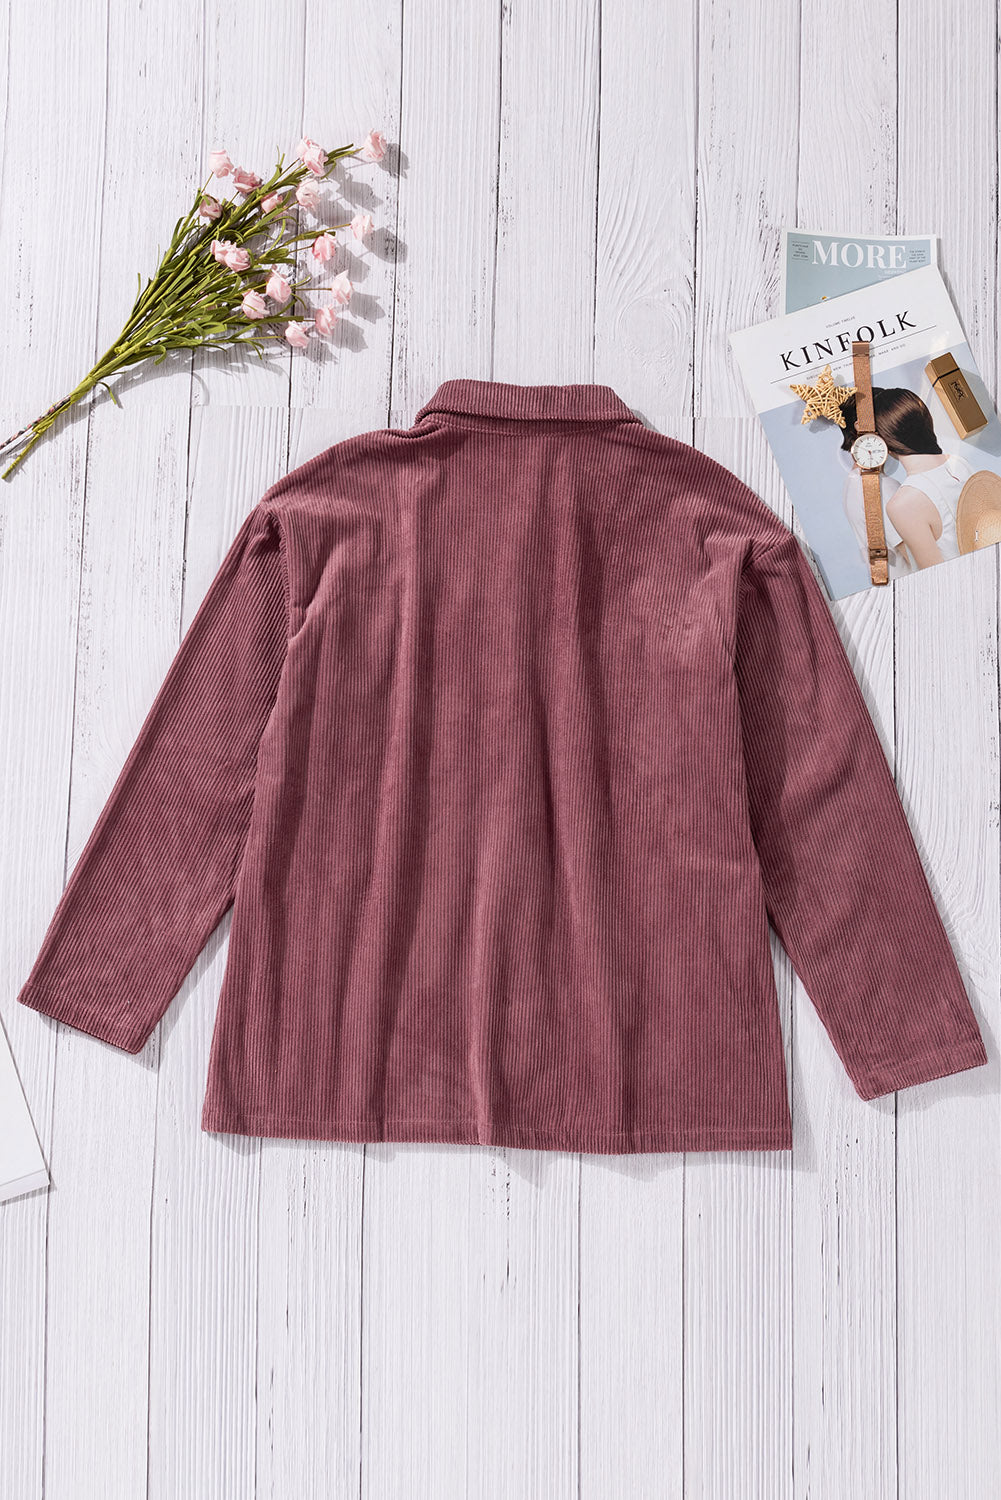 Veste texturée côtelée avec poches et boutons violets rouge vif